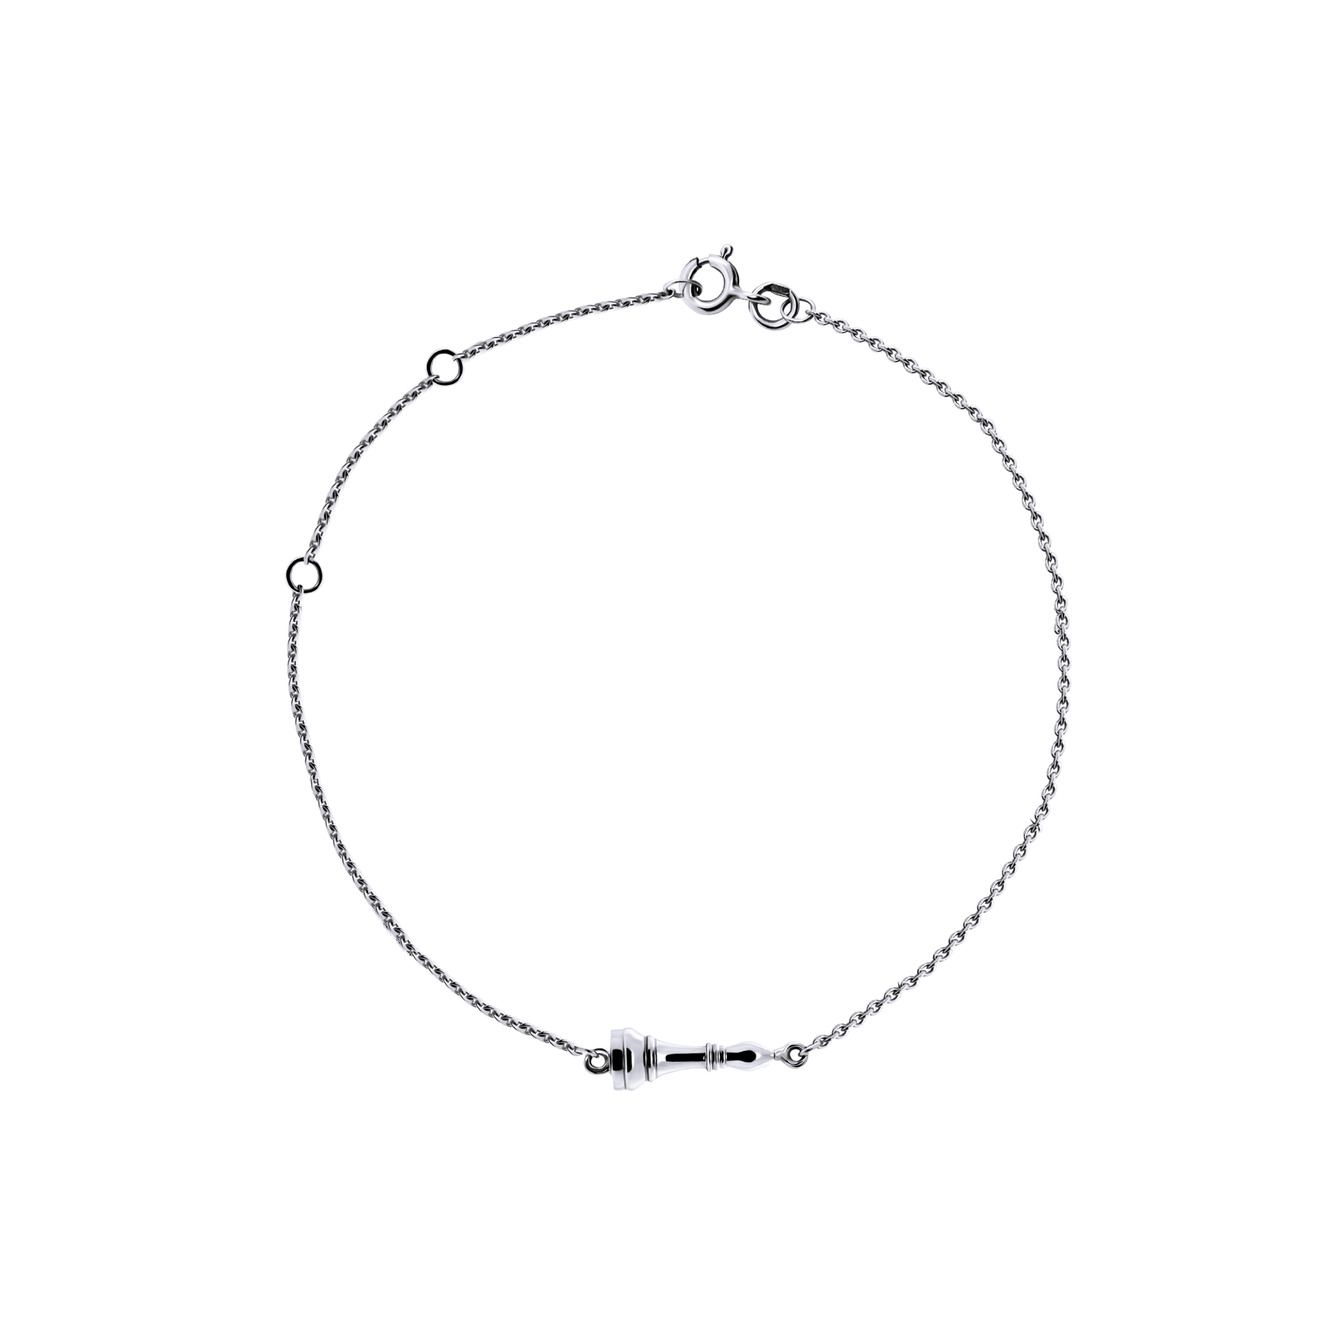 Prosto Jewelry Тонкий браслет «Слон» из серебра prosto jewlry позолоченный объёмный браслет цепь из серебра с круглыми звеньями